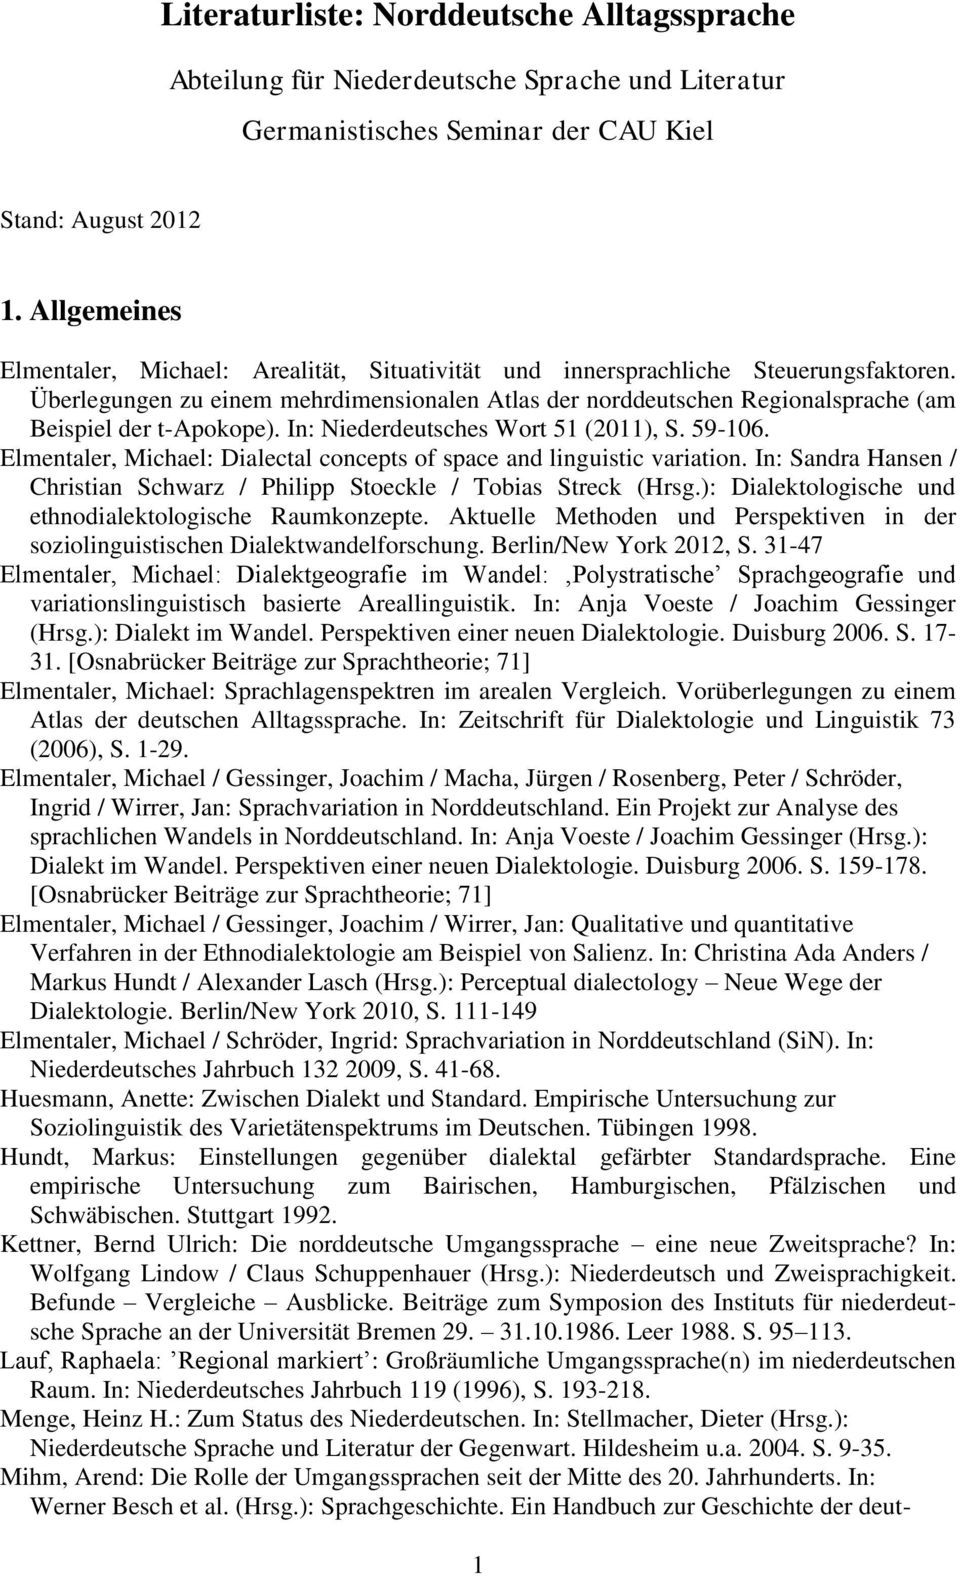 Überlegungen zu einem mehrdimensionalen Atlas der norddeutschen Regionalsprache (am Beispiel der t-apokope). In: Niederdeutsches Wort 51 (2011), S. 59-106.